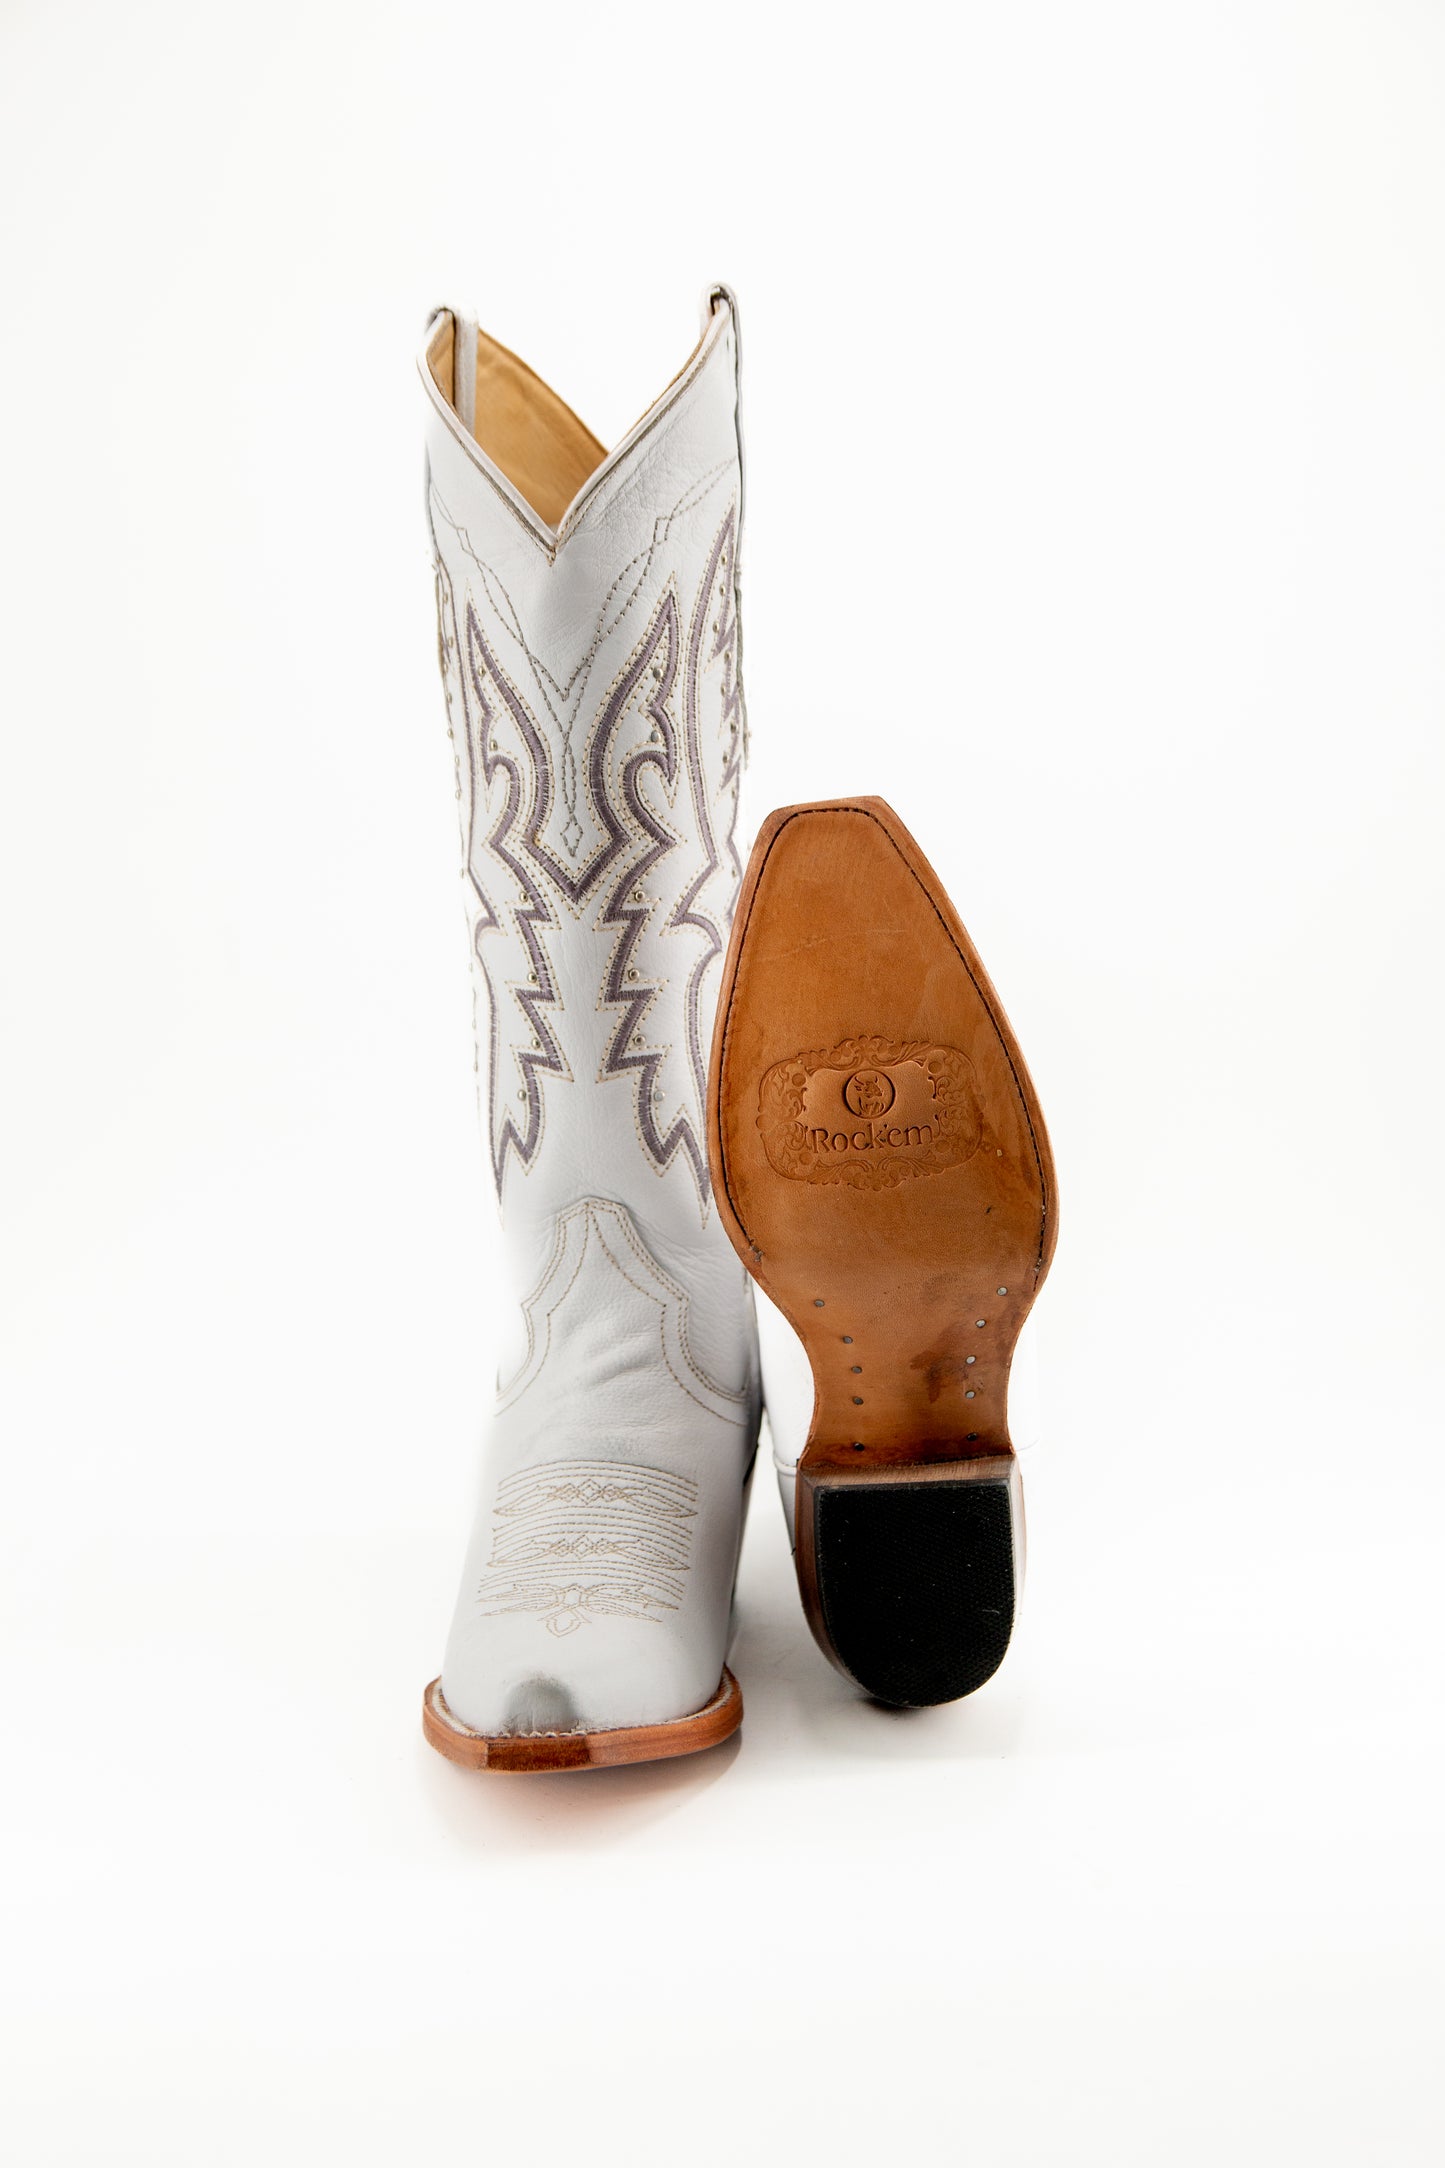 Alexa Venado Blanco Cuero Retro Snip Toe Cowgirl Boot